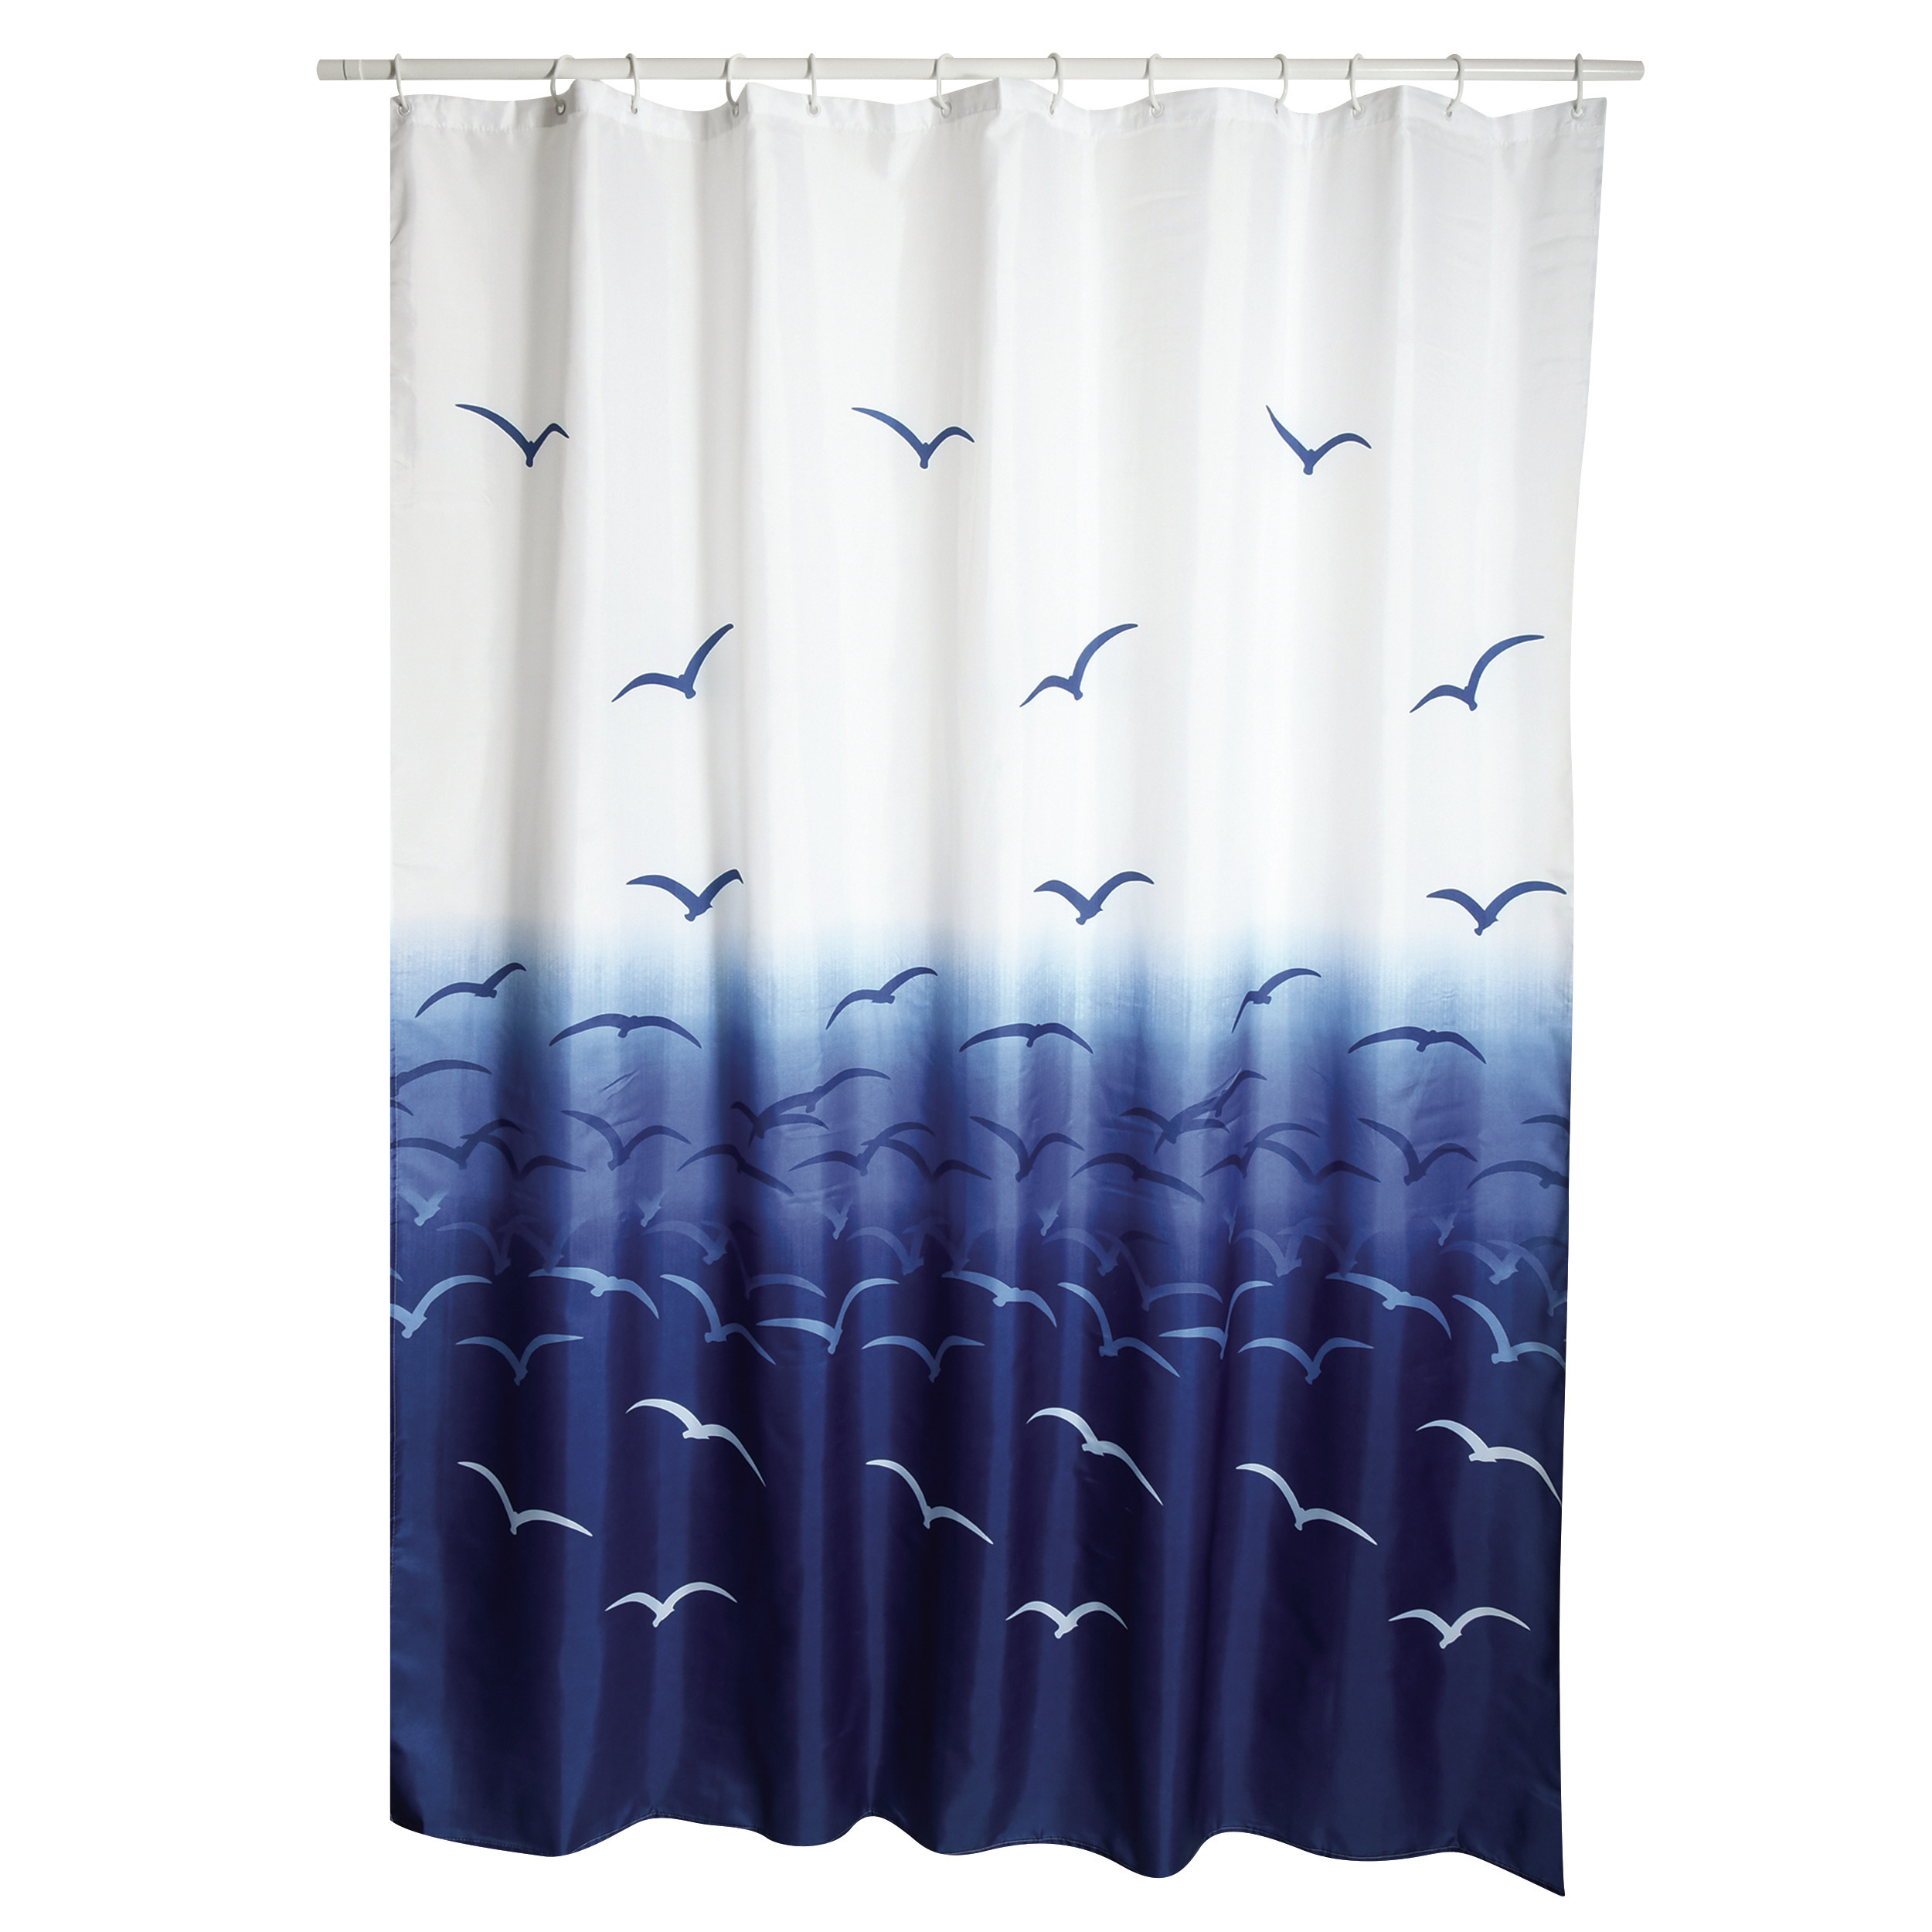 MSV Douchegordijn met ringen wit-blauw vogels print Polyester 180 x 200 cm wasbaar